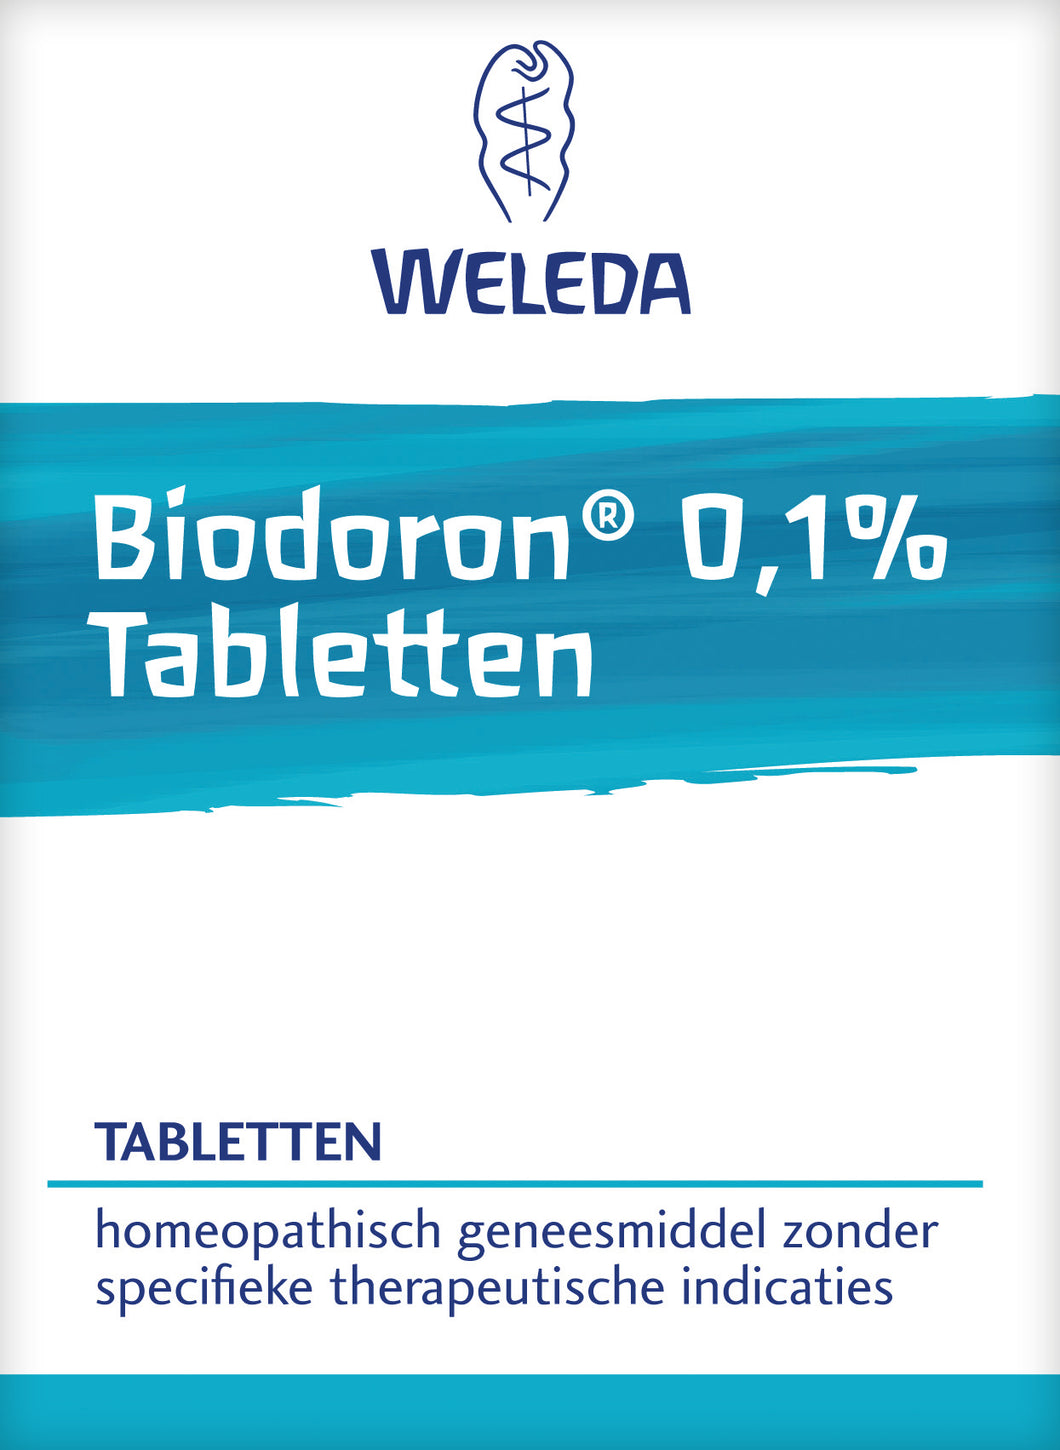 Biodoron 0,1% Tabletten van Weleda - Drogisterij Mevrouw Ooievaar